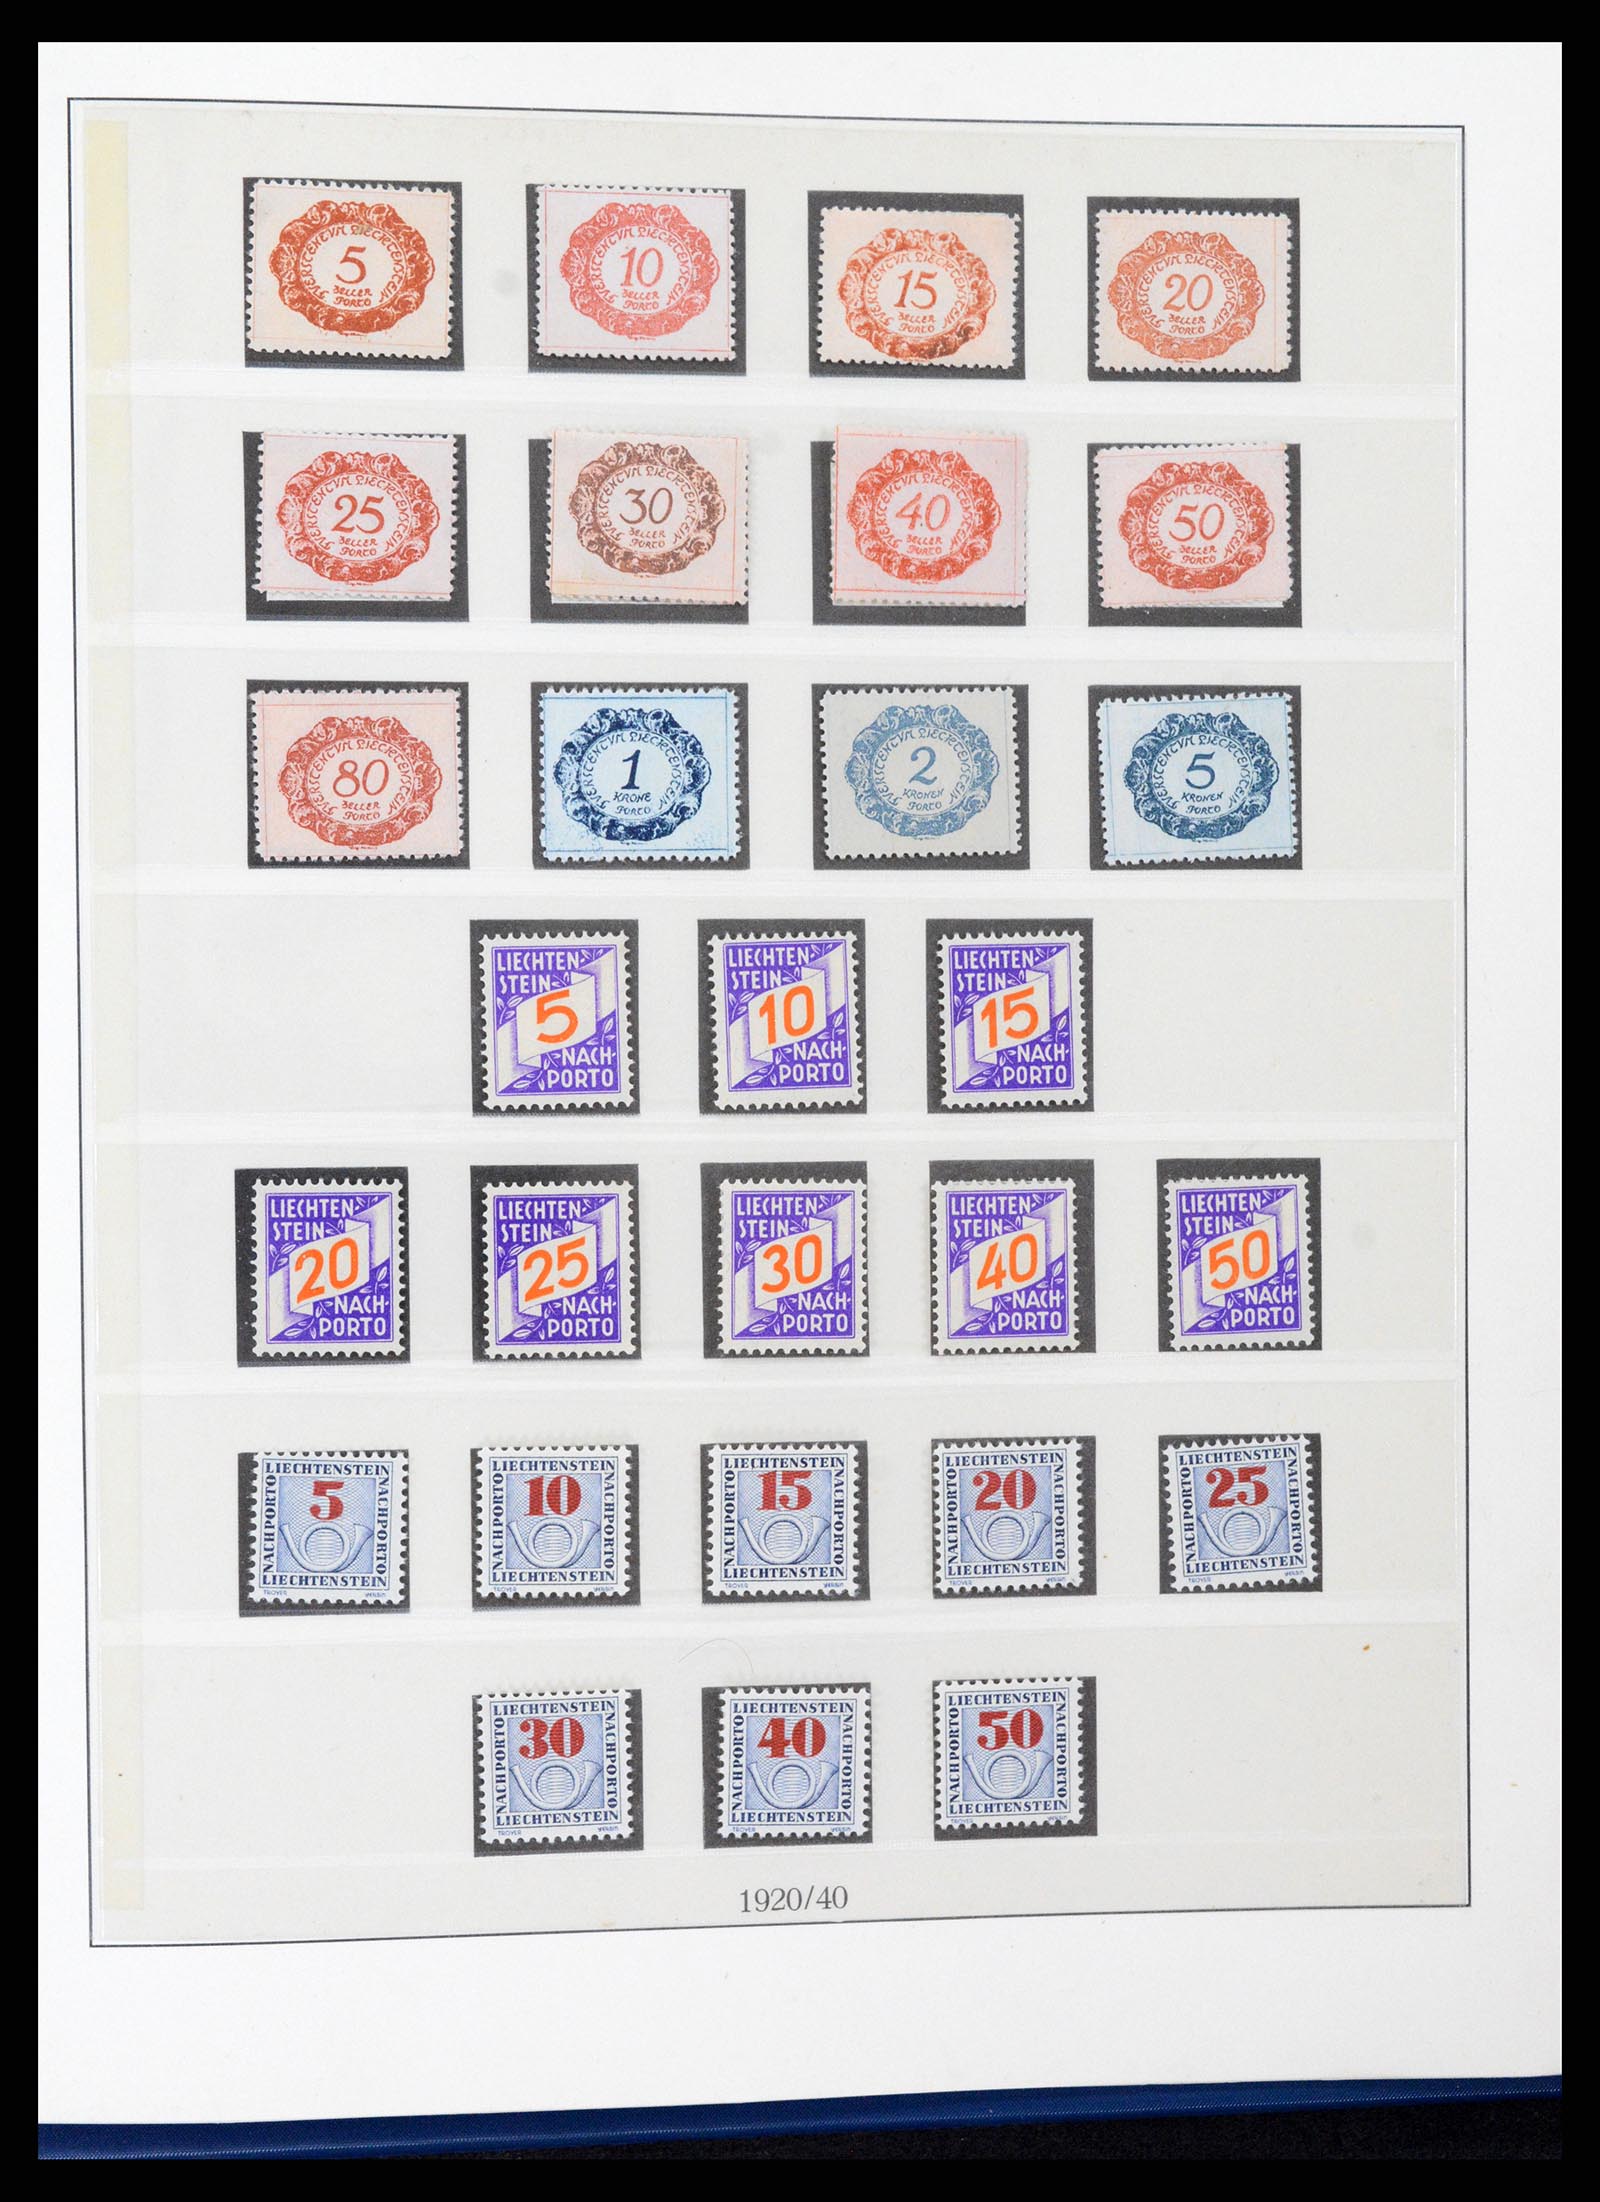 37295 033 - Stamp collection 37295 Liechtenstein 1912-2009.